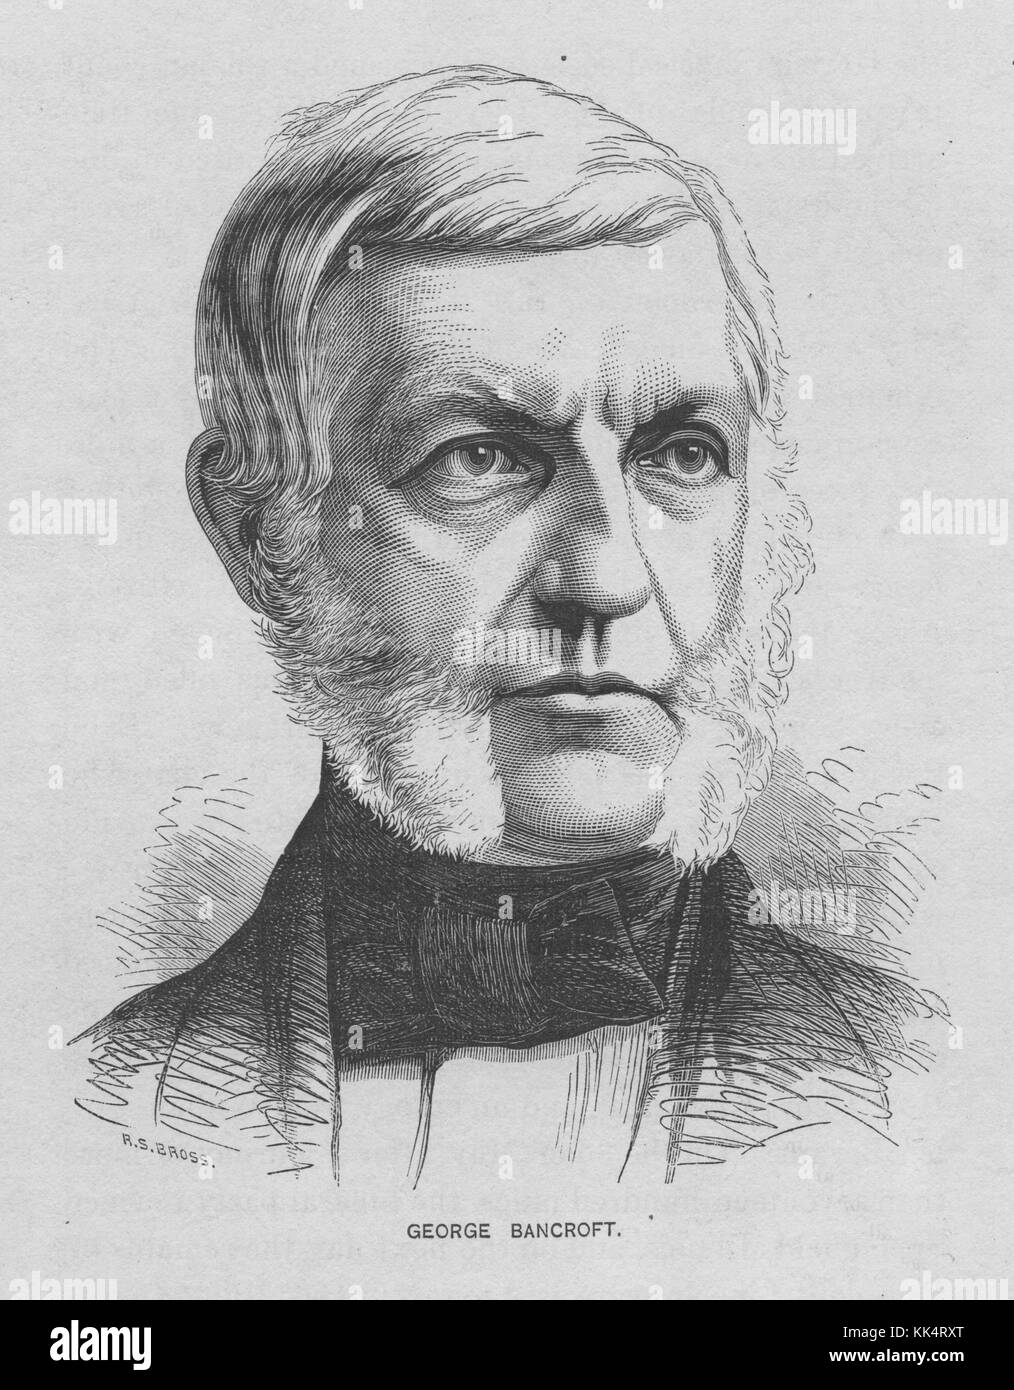 Portrait gravé de George Bancroft, 17e secrétaire de la Marine des États-Unis, il établit l'Académie navale des États-Unis à Annapolis en 1845, États-Unis, 1870. De la bibliothèque publique de New York. Banque D'Images